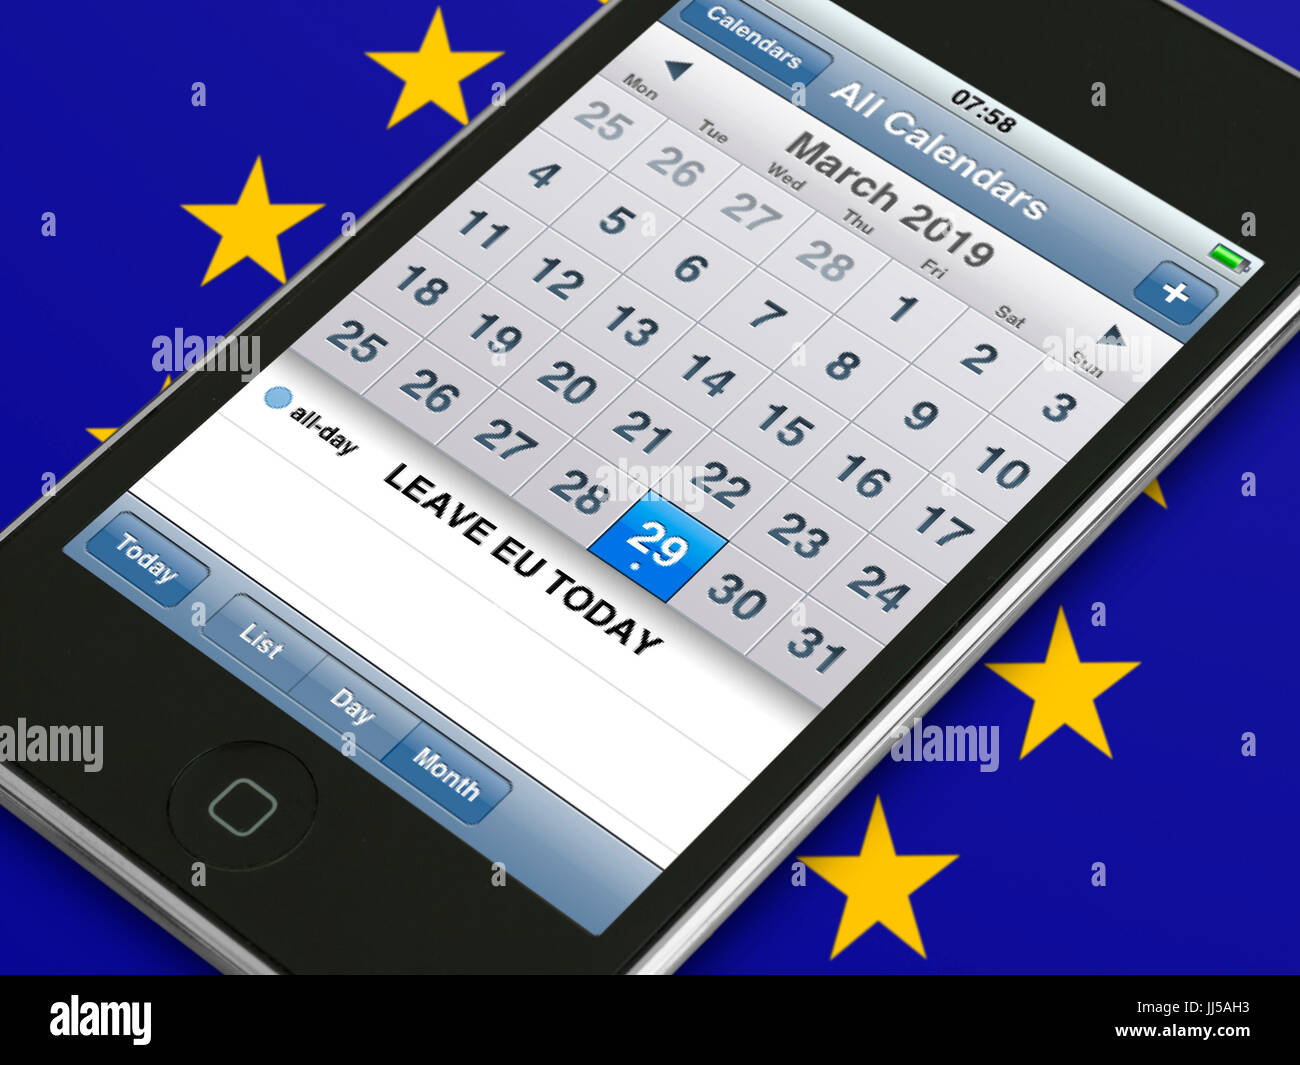 Téléphone mobile device montrant d'événement de l'agenda agenda pour Brexit date à laquelle le Royaume-Uni doit quitter l'Union européenne l'Union européenne ("Independence Day") Banque D'Images